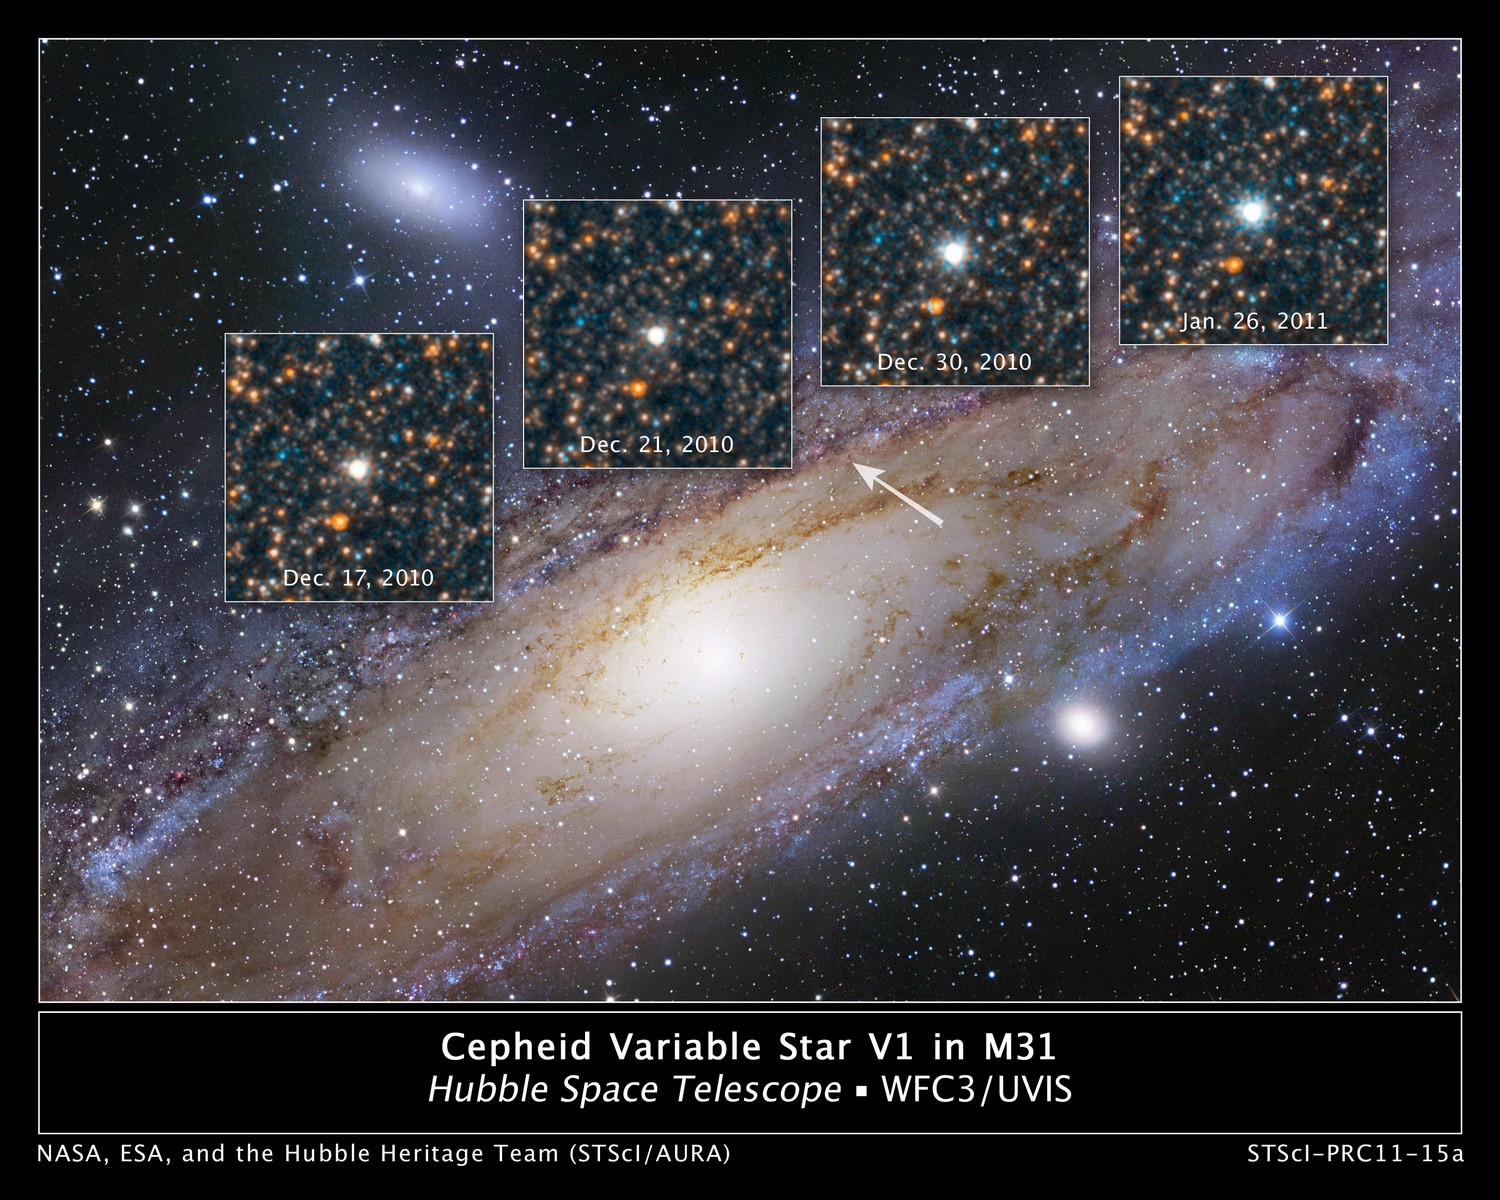 Les variations d'éclat de V1, une céphéide célèbre de la galaxie M 31. © Nasa/Esa/The Hubble Heritage Team (STScI/AURA)/ R. Gendler
